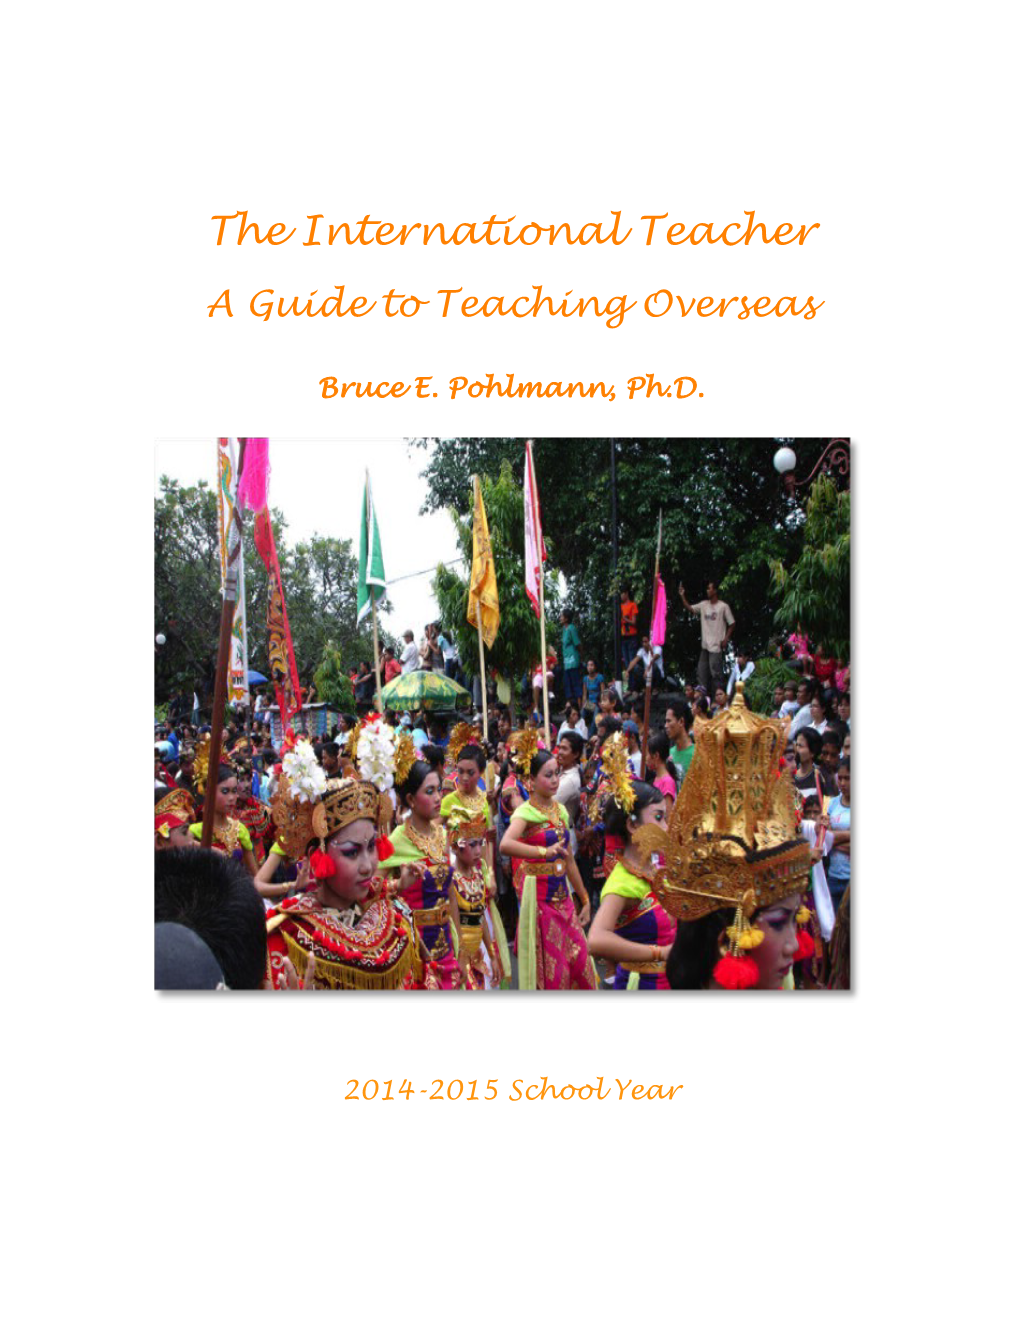 The International Teacher a Guide to Teaching Overseas